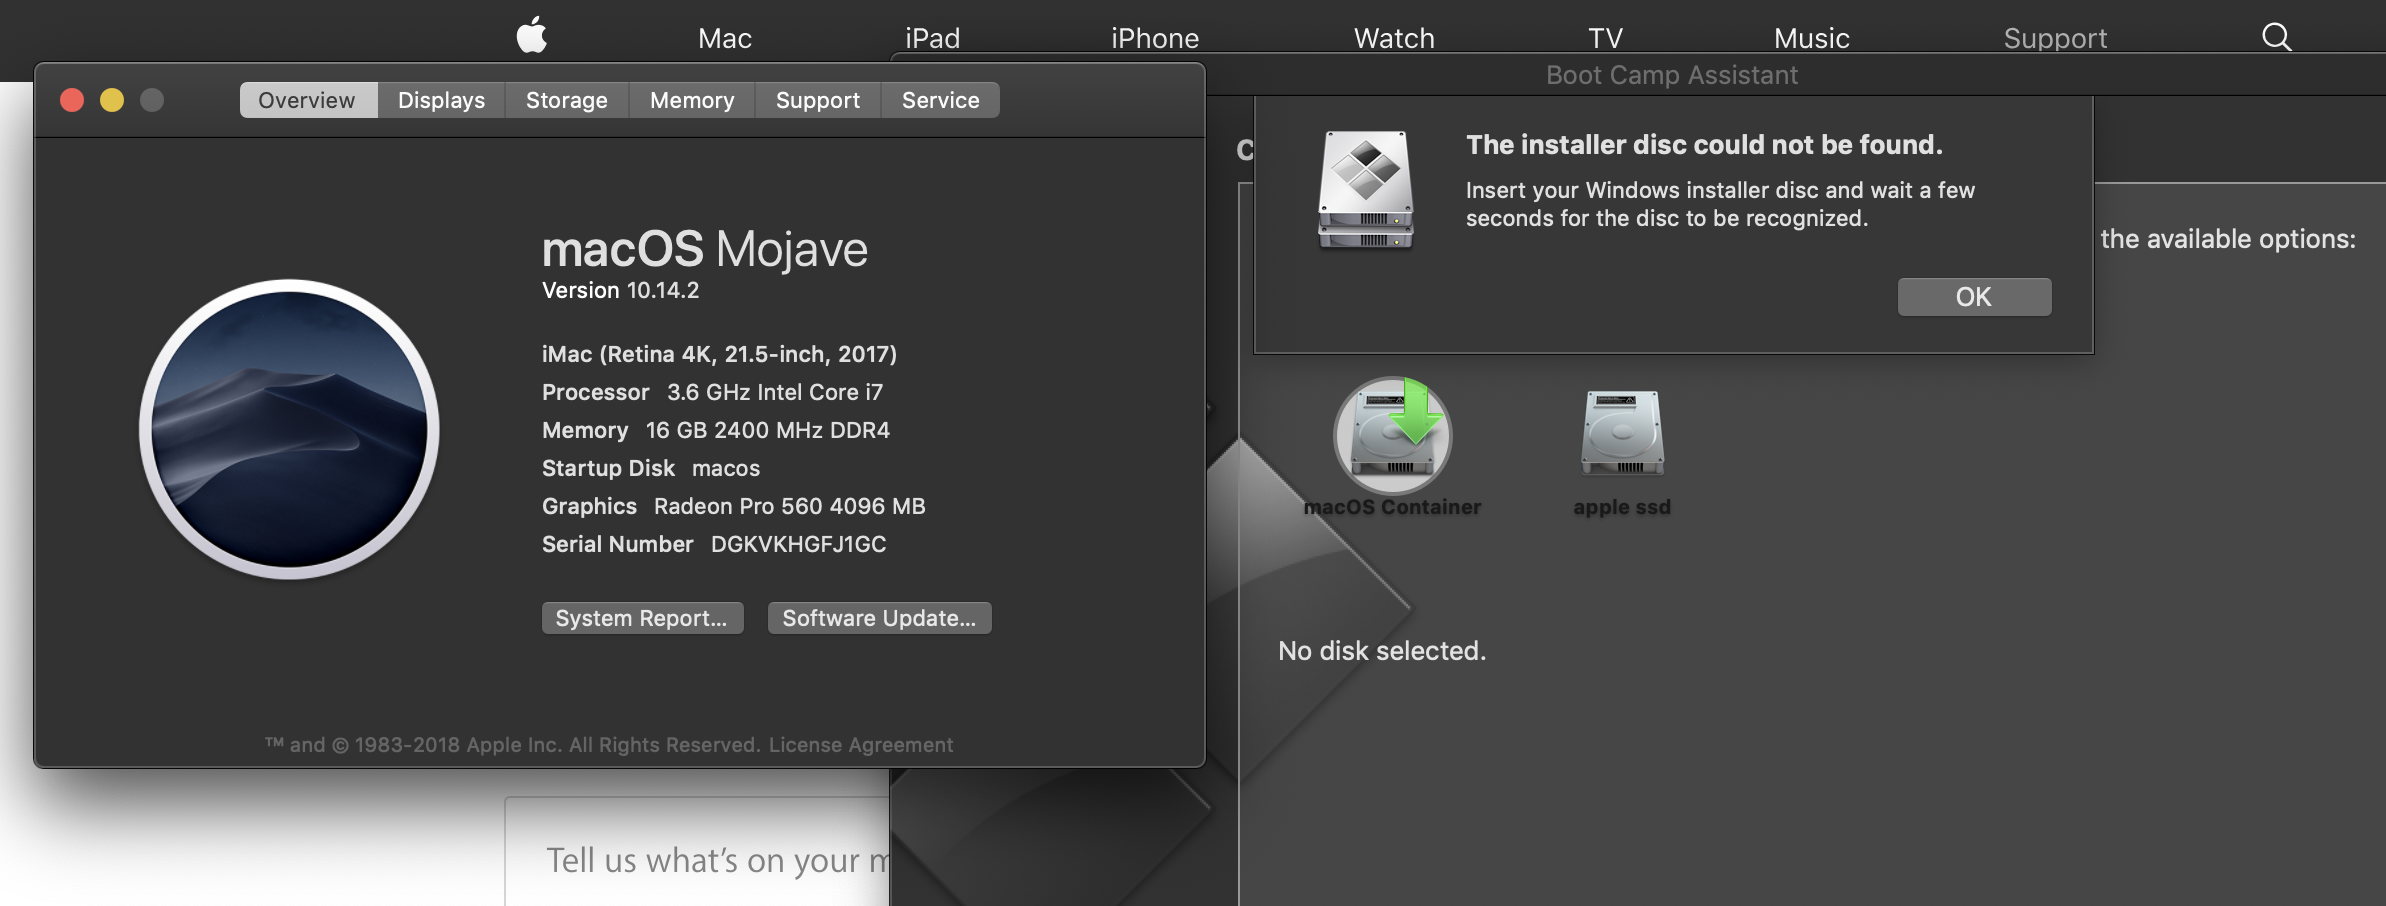 windows installer disk for mac download